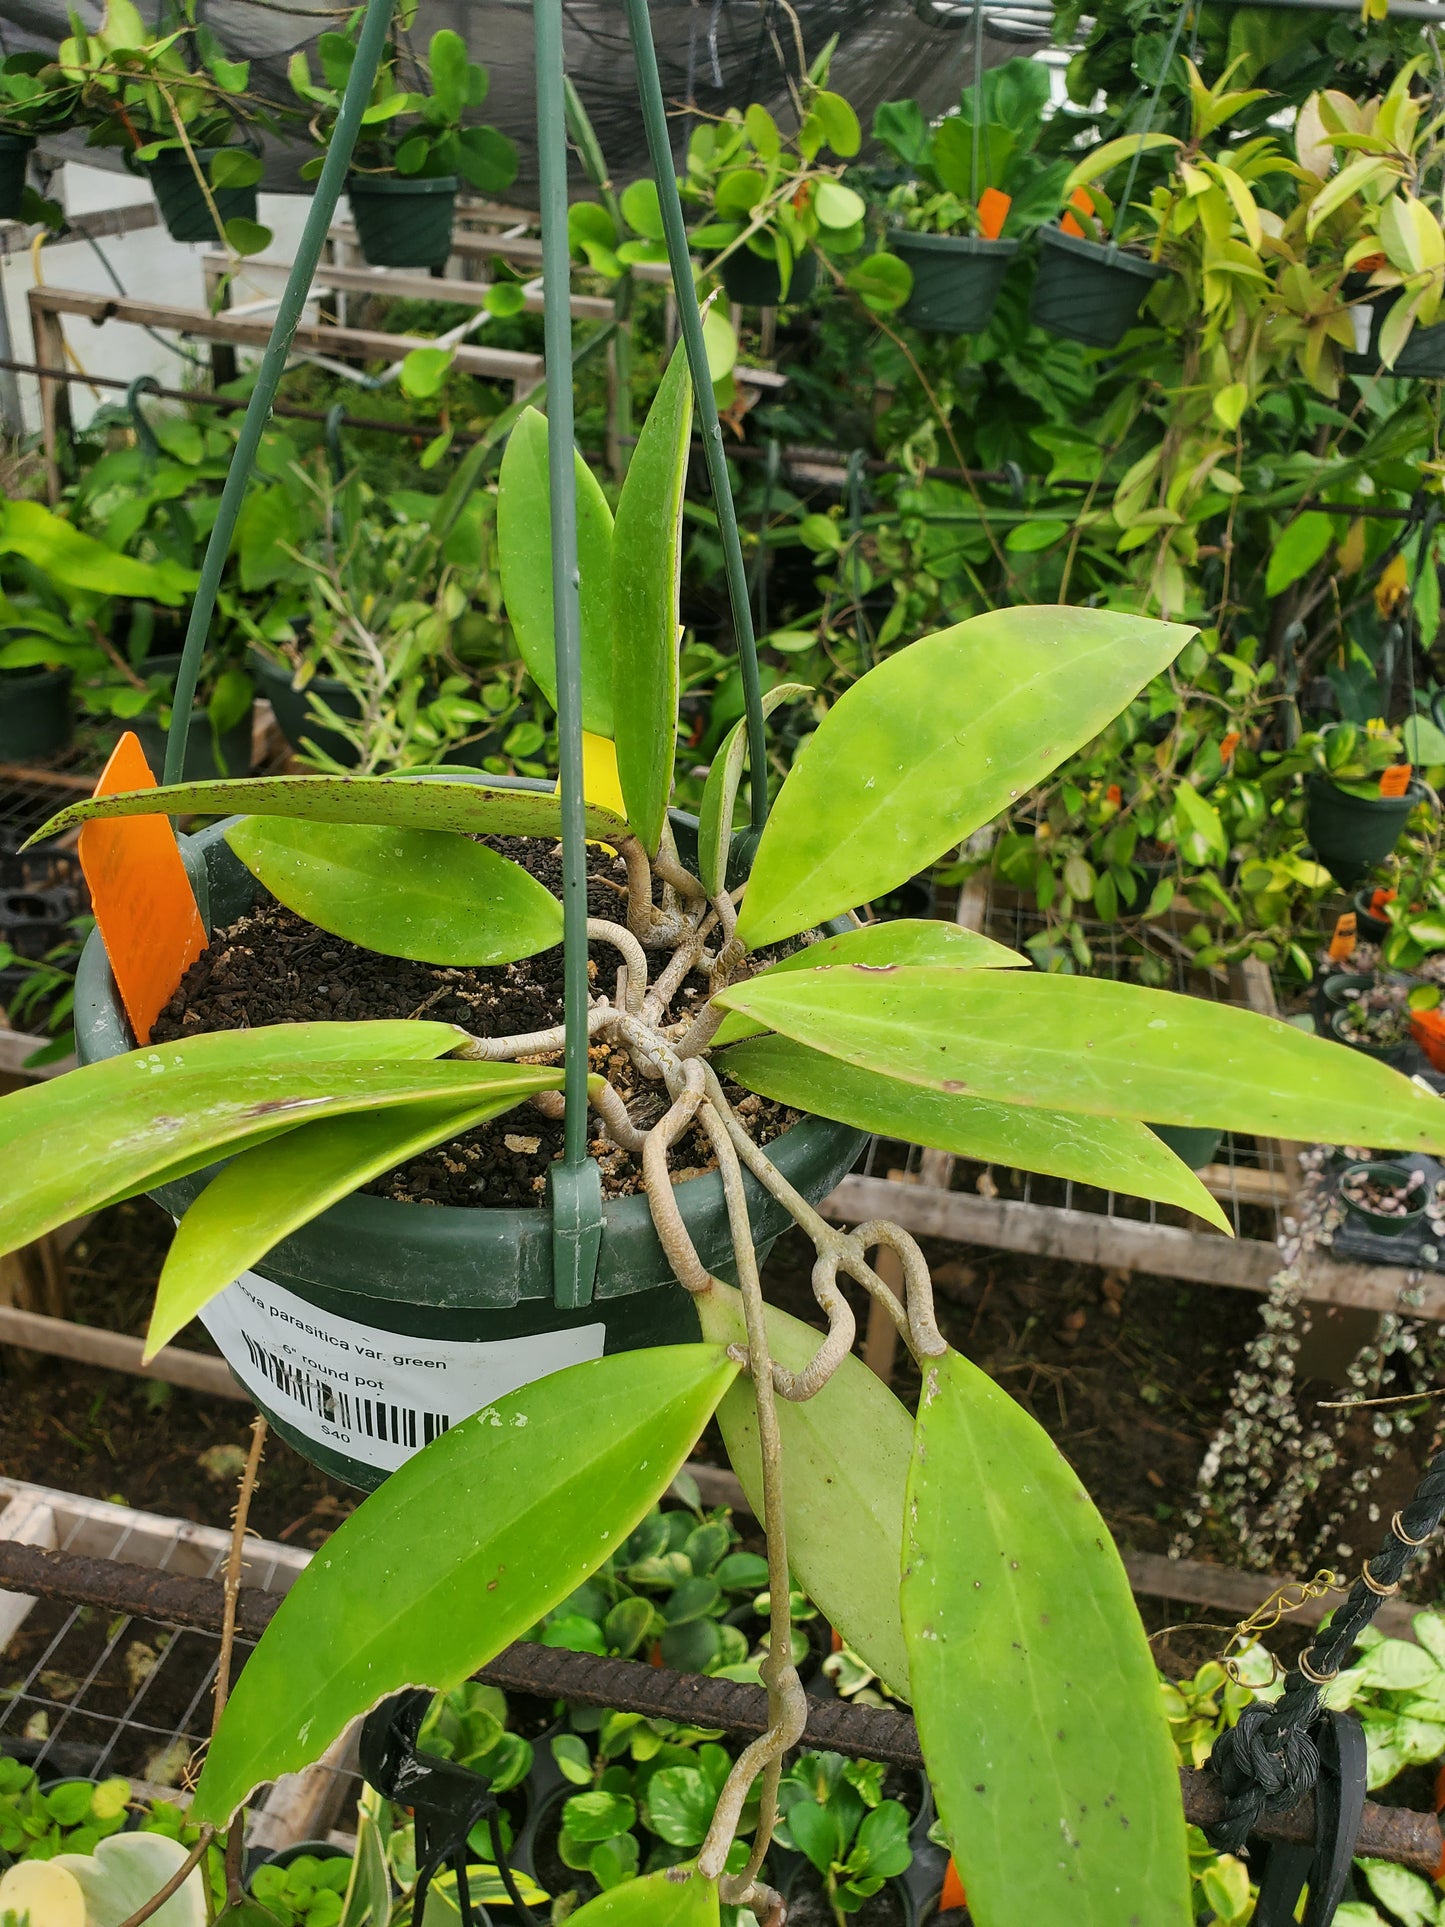 Hoya parasitica var. green